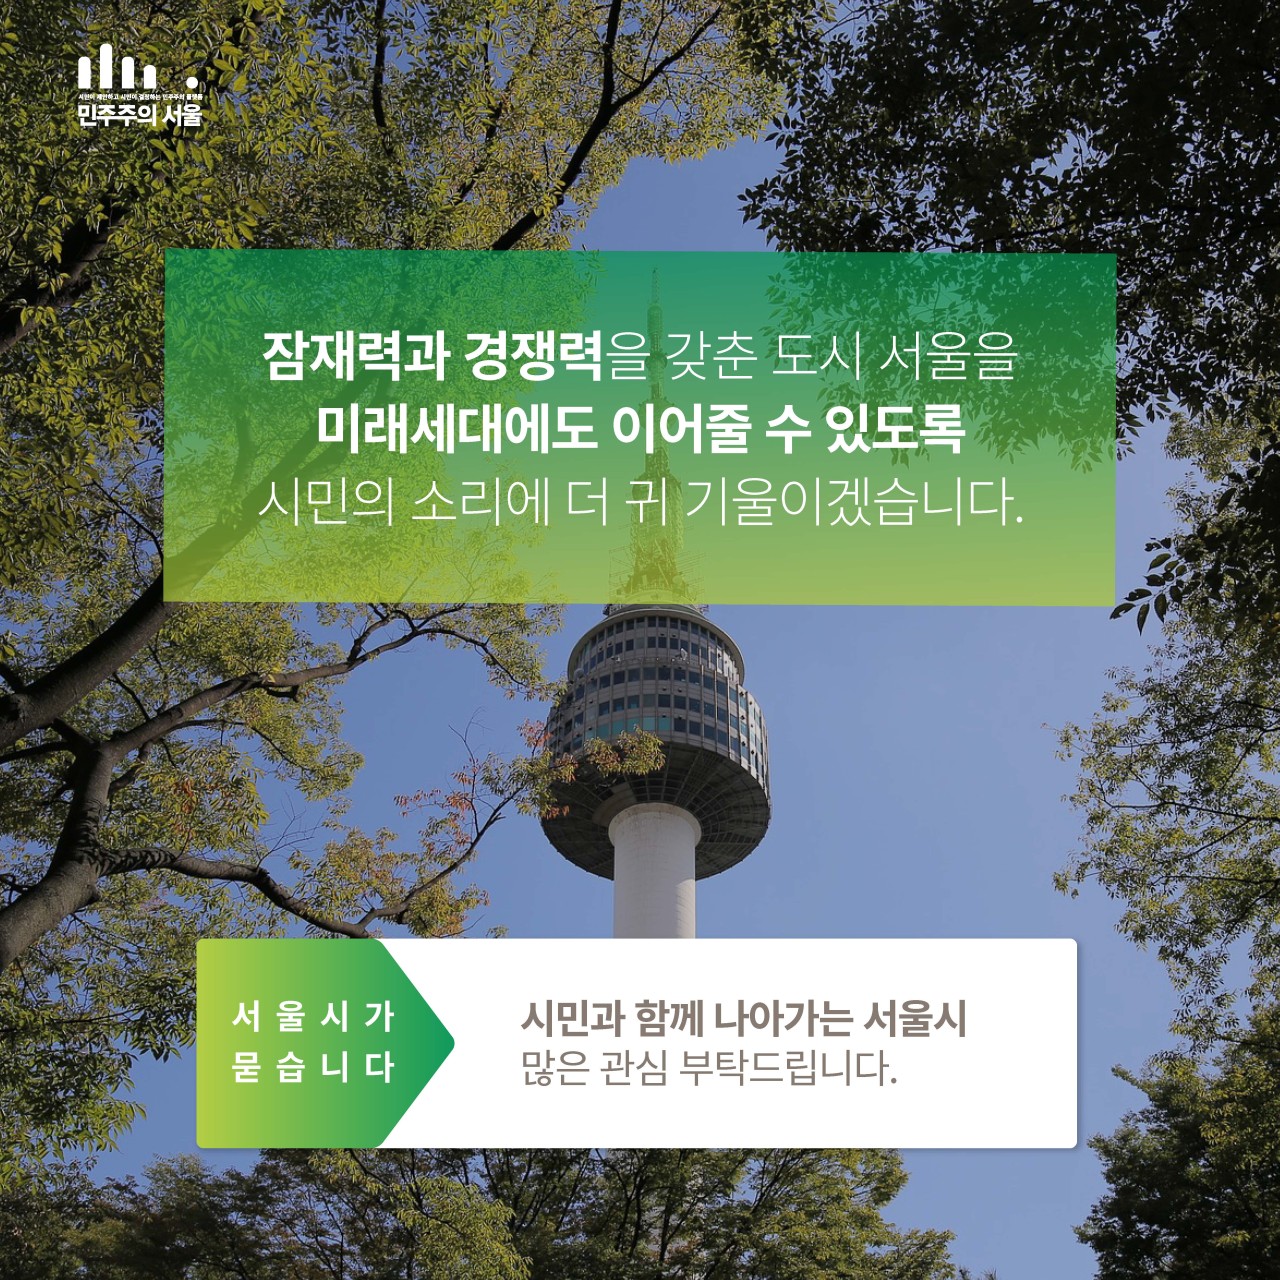 민주주의 서울 잠재력과 경쟁력을 갖춘 도시 서울을 미래세대에도 이어줄 수 있도록 시민의 소리에 더 귀 기울이겠습니다. 서 울 시 가 묻 습 니 다 시민과 함께 나아가는 서울시 많은 관심 부탁드립니다.